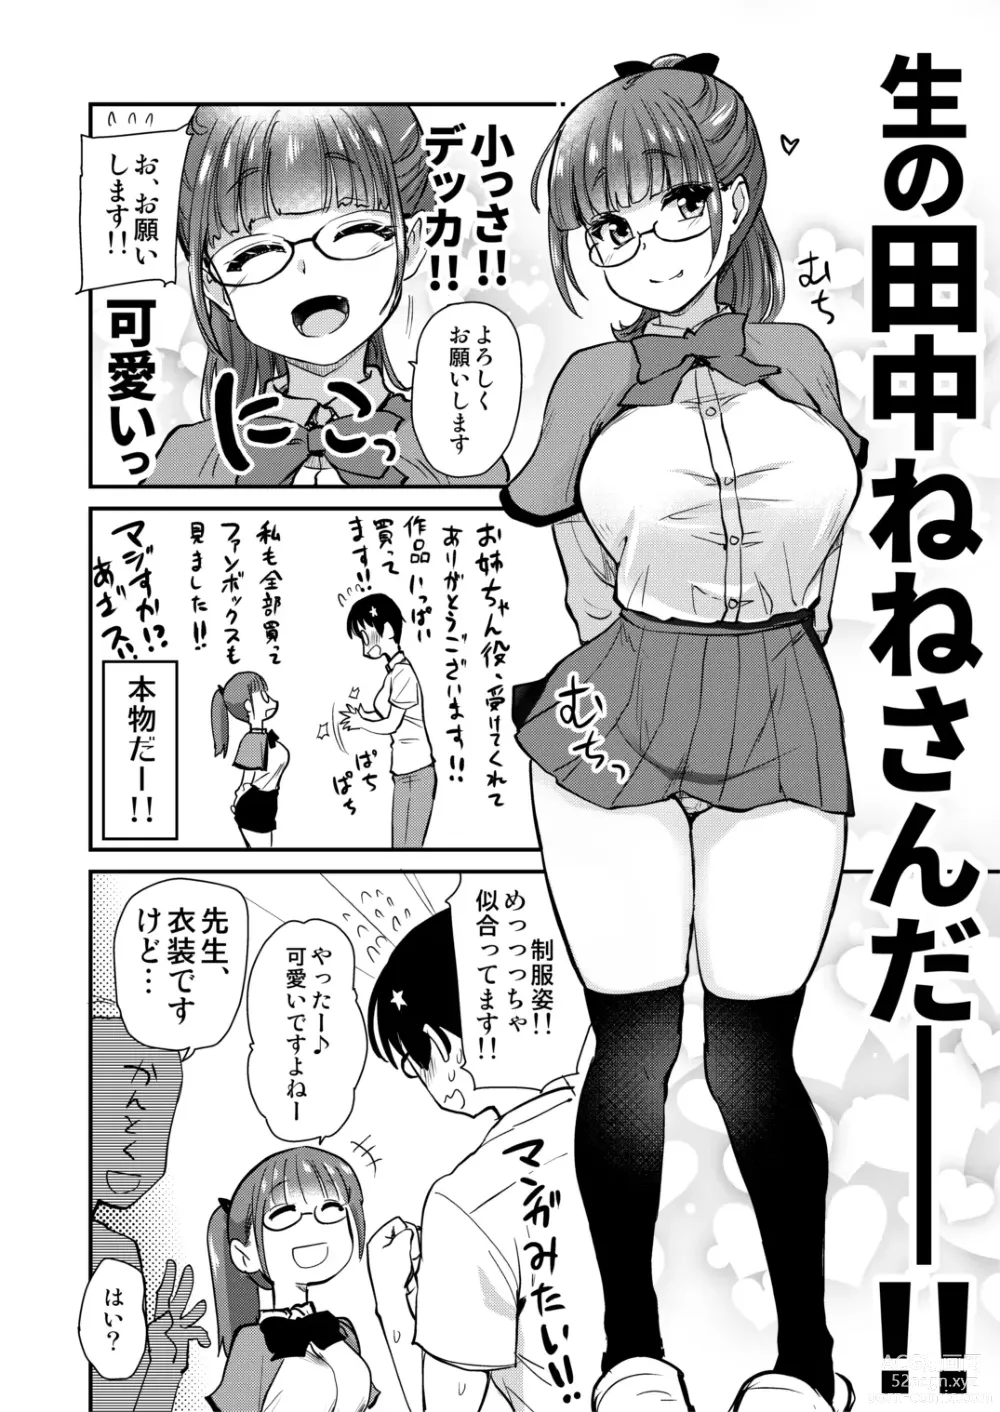 Page 13 of doujinshi Jibun no Kaita Manga ga Jissha AV ni!? Sekkaku nano de Satsuei Genba no Kengaku ni Ittekimashita.